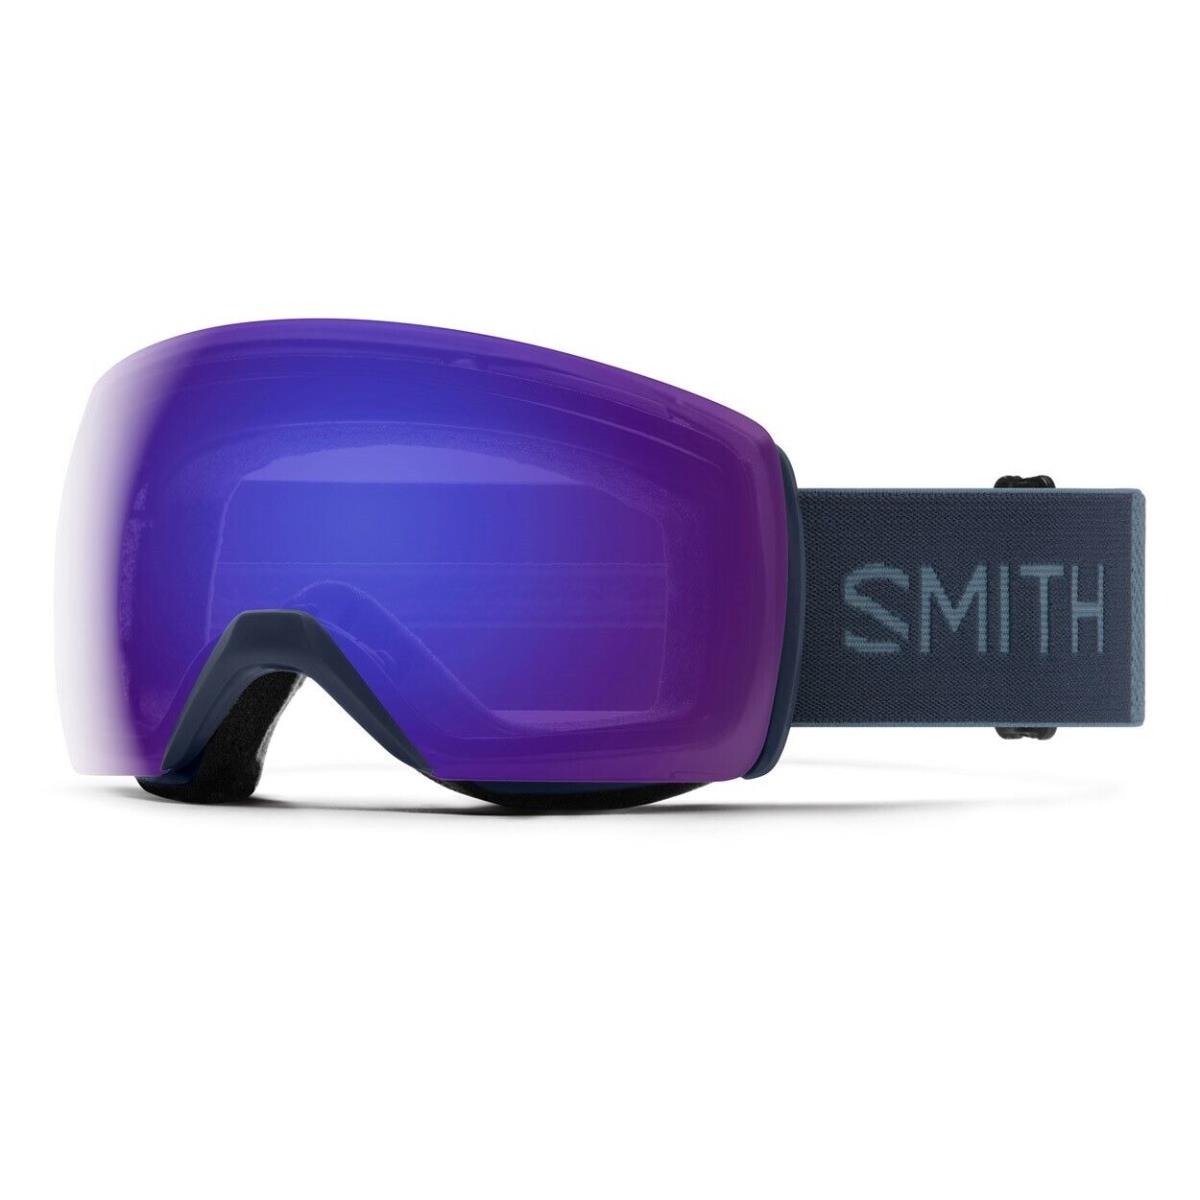 Smith Skyline XL Snow Goggles French Navy Chromapop Everyday Violet Mirror Lens - Navy, Violet